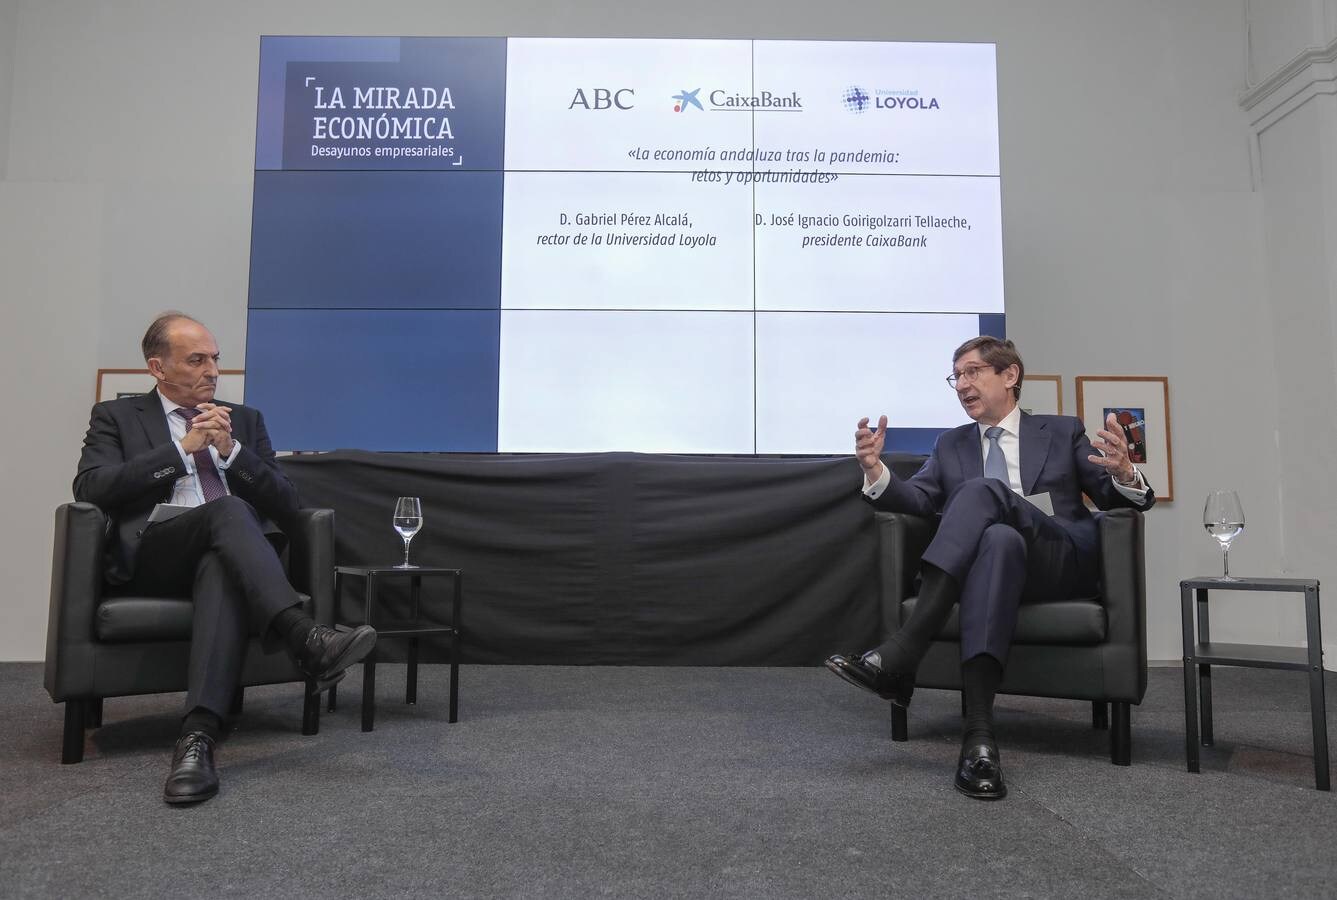 Goirigolzarri destaca la«pujanza» de las empresas andaluzas en exportaciones, tecnología e industria